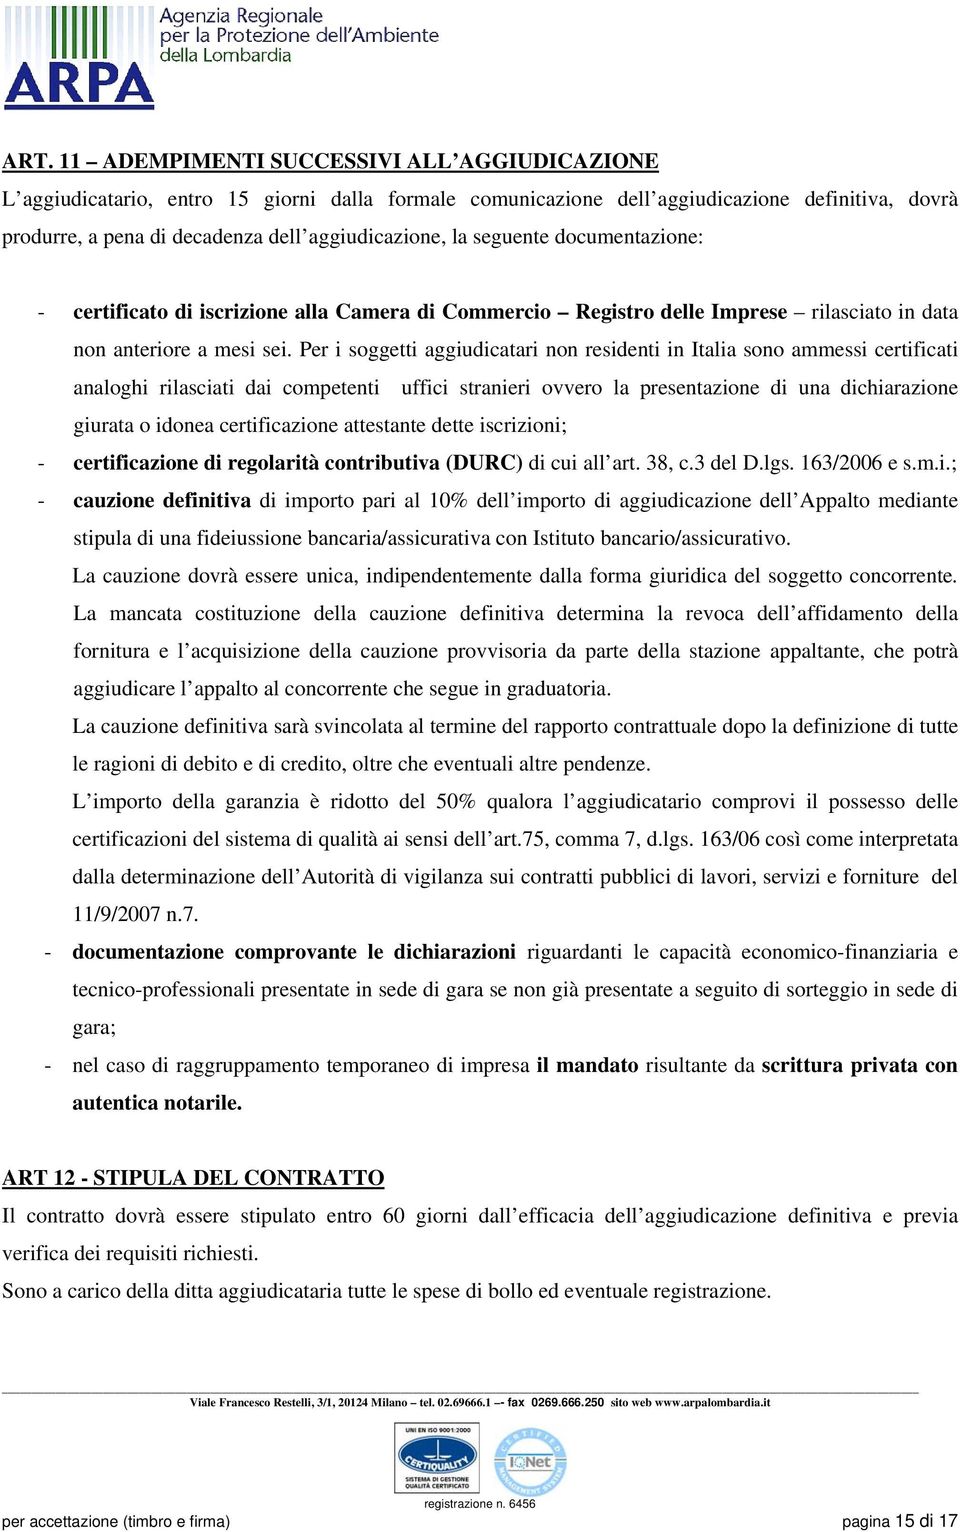 Per i soggetti aggiudicatari non residenti in Italia sono ammessi certificati analoghi rilasciati dai competenti uffici stranieri ovvero la presentazione di una dichiarazione giurata o idonea